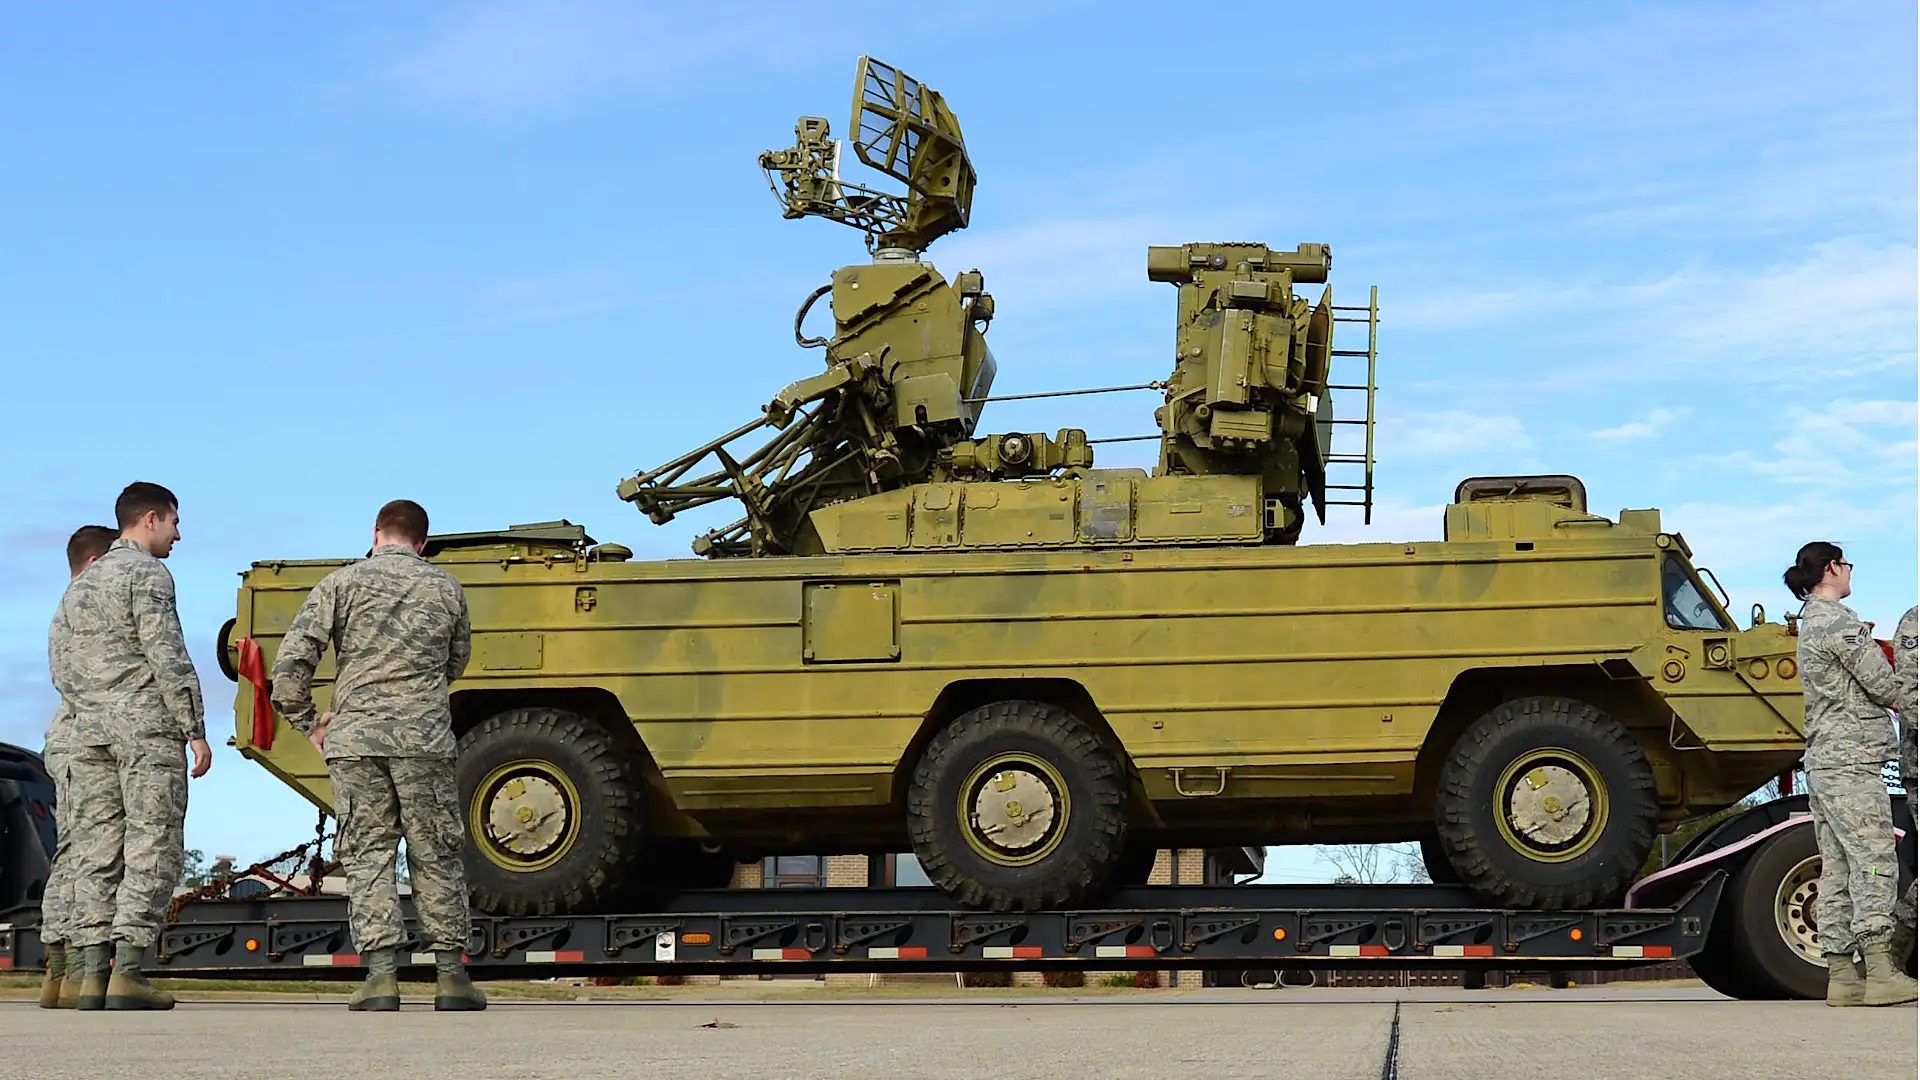 NÓNG: Mỹ đang bí mật tung kho vũ khí do Nga sản xuất tới Ukraine chiến đấu - Ảnh 1.